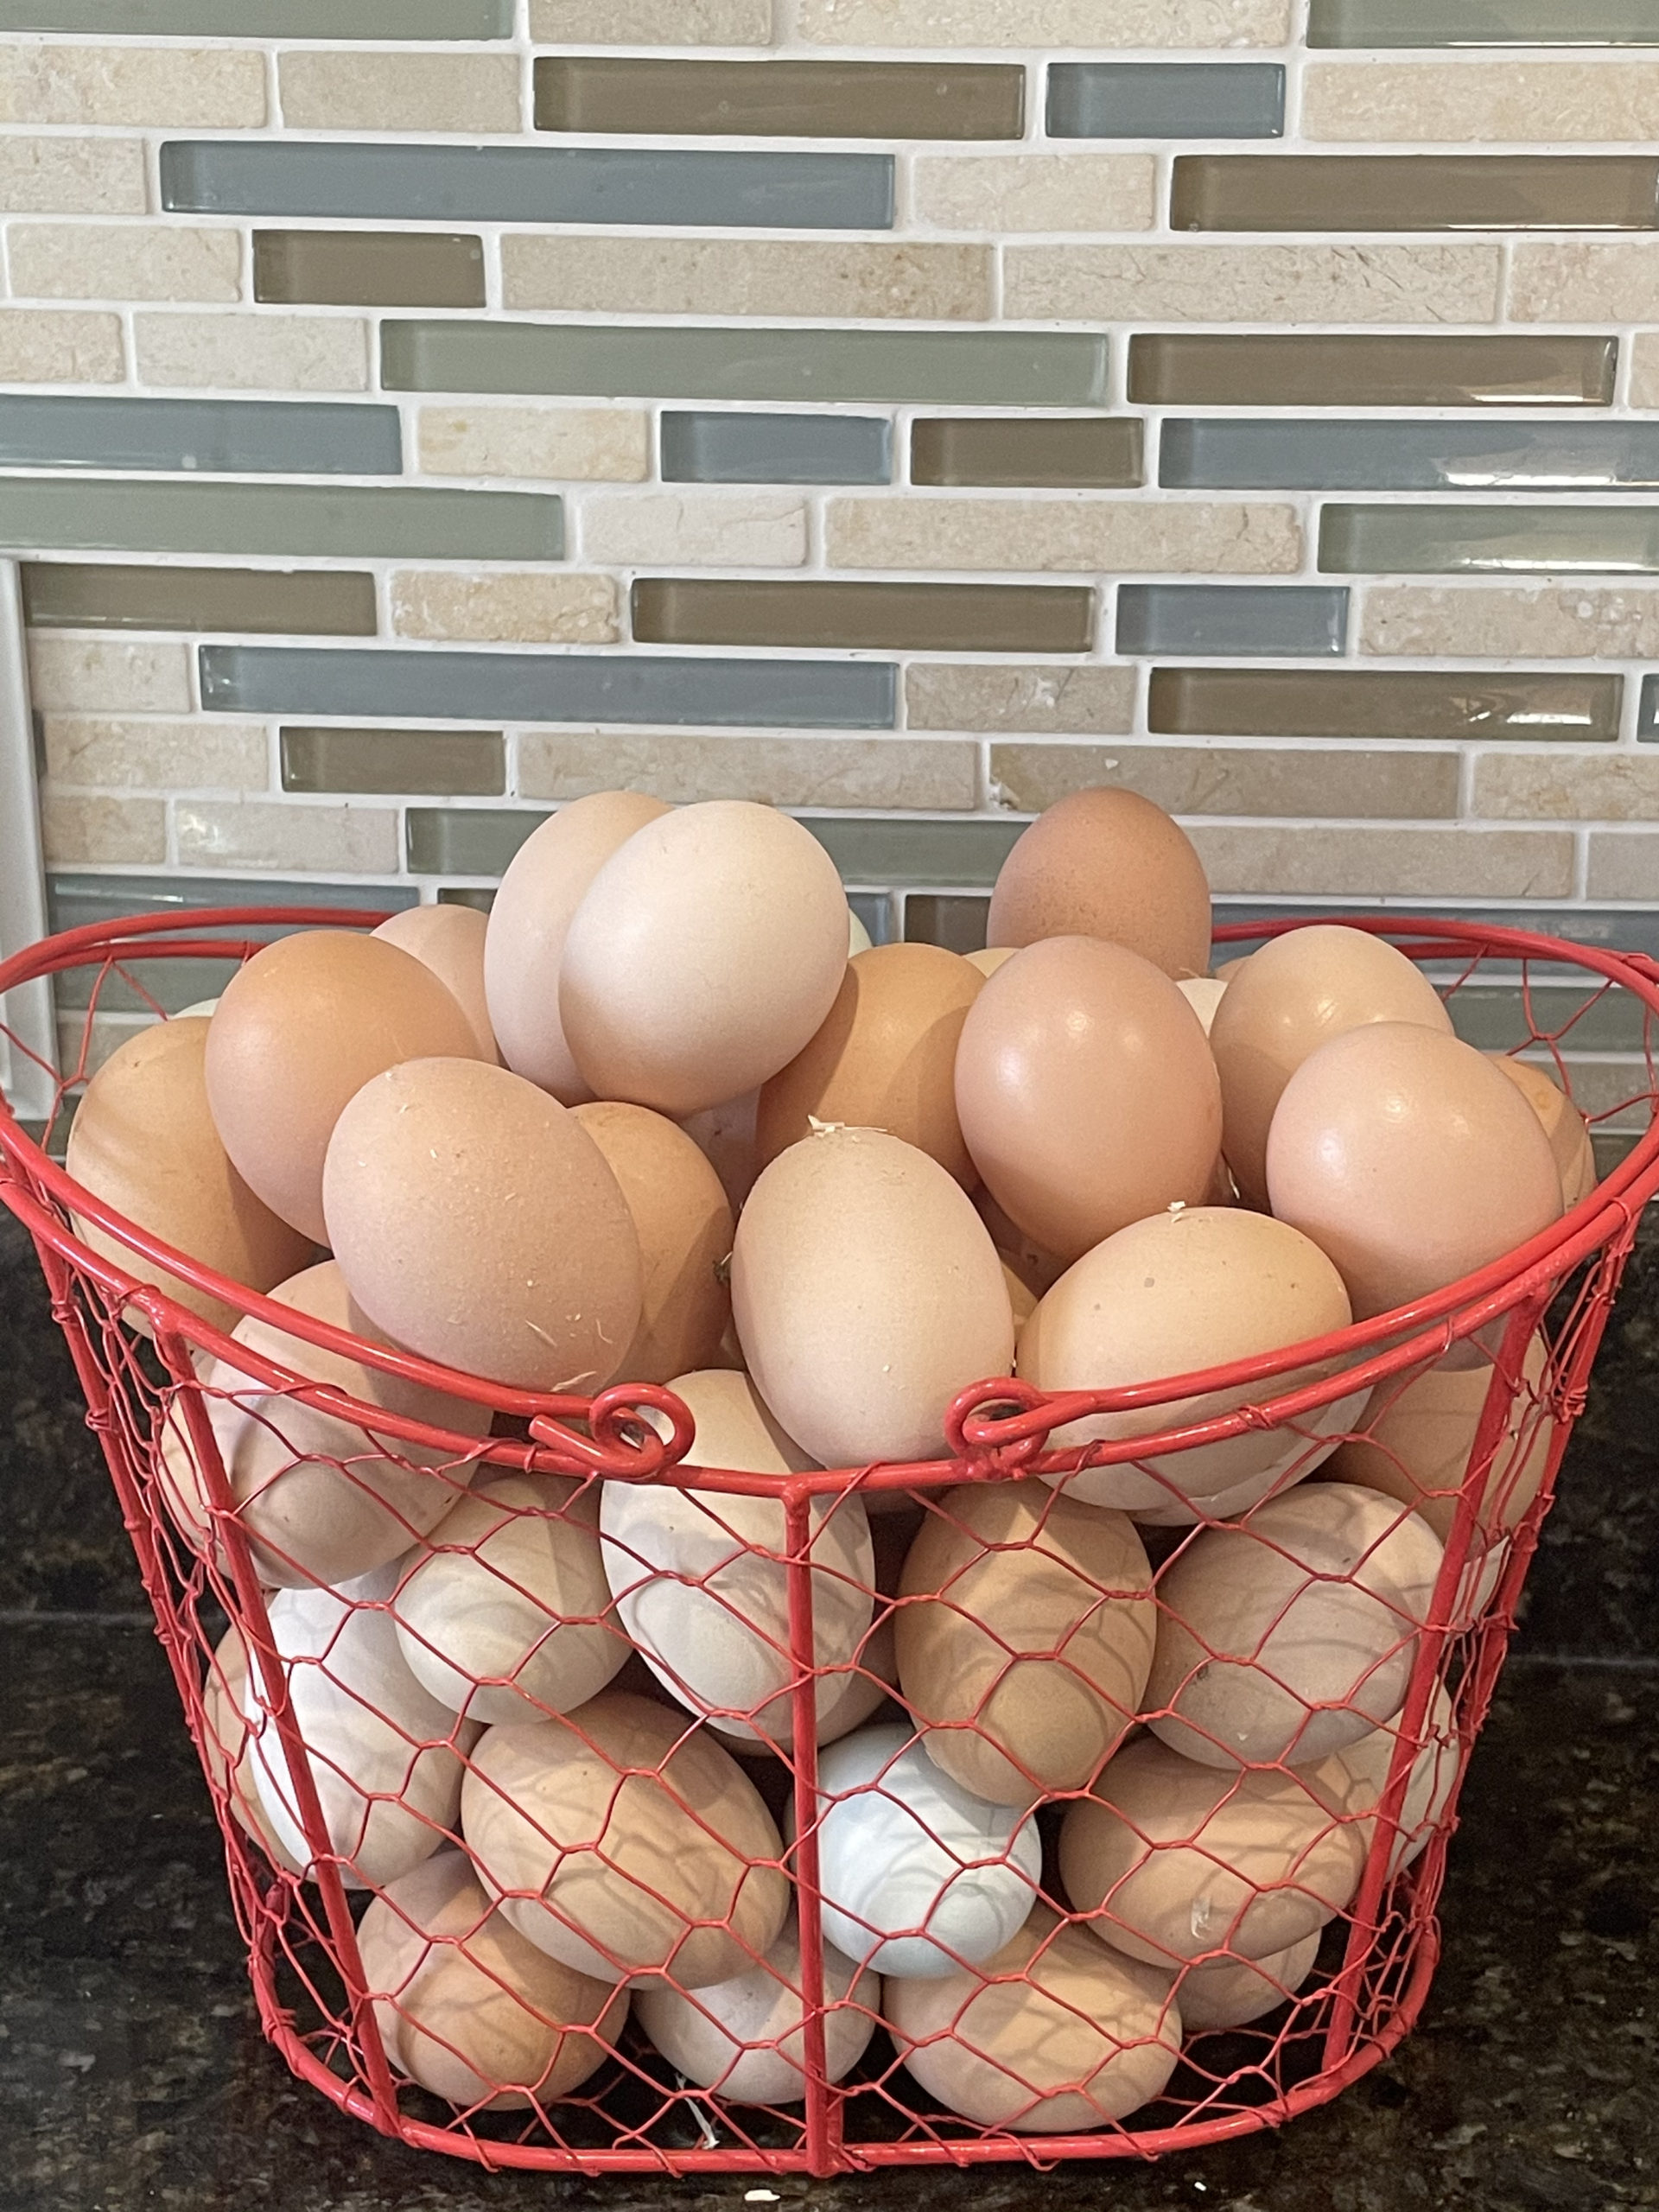 Basket full of fresh eggs